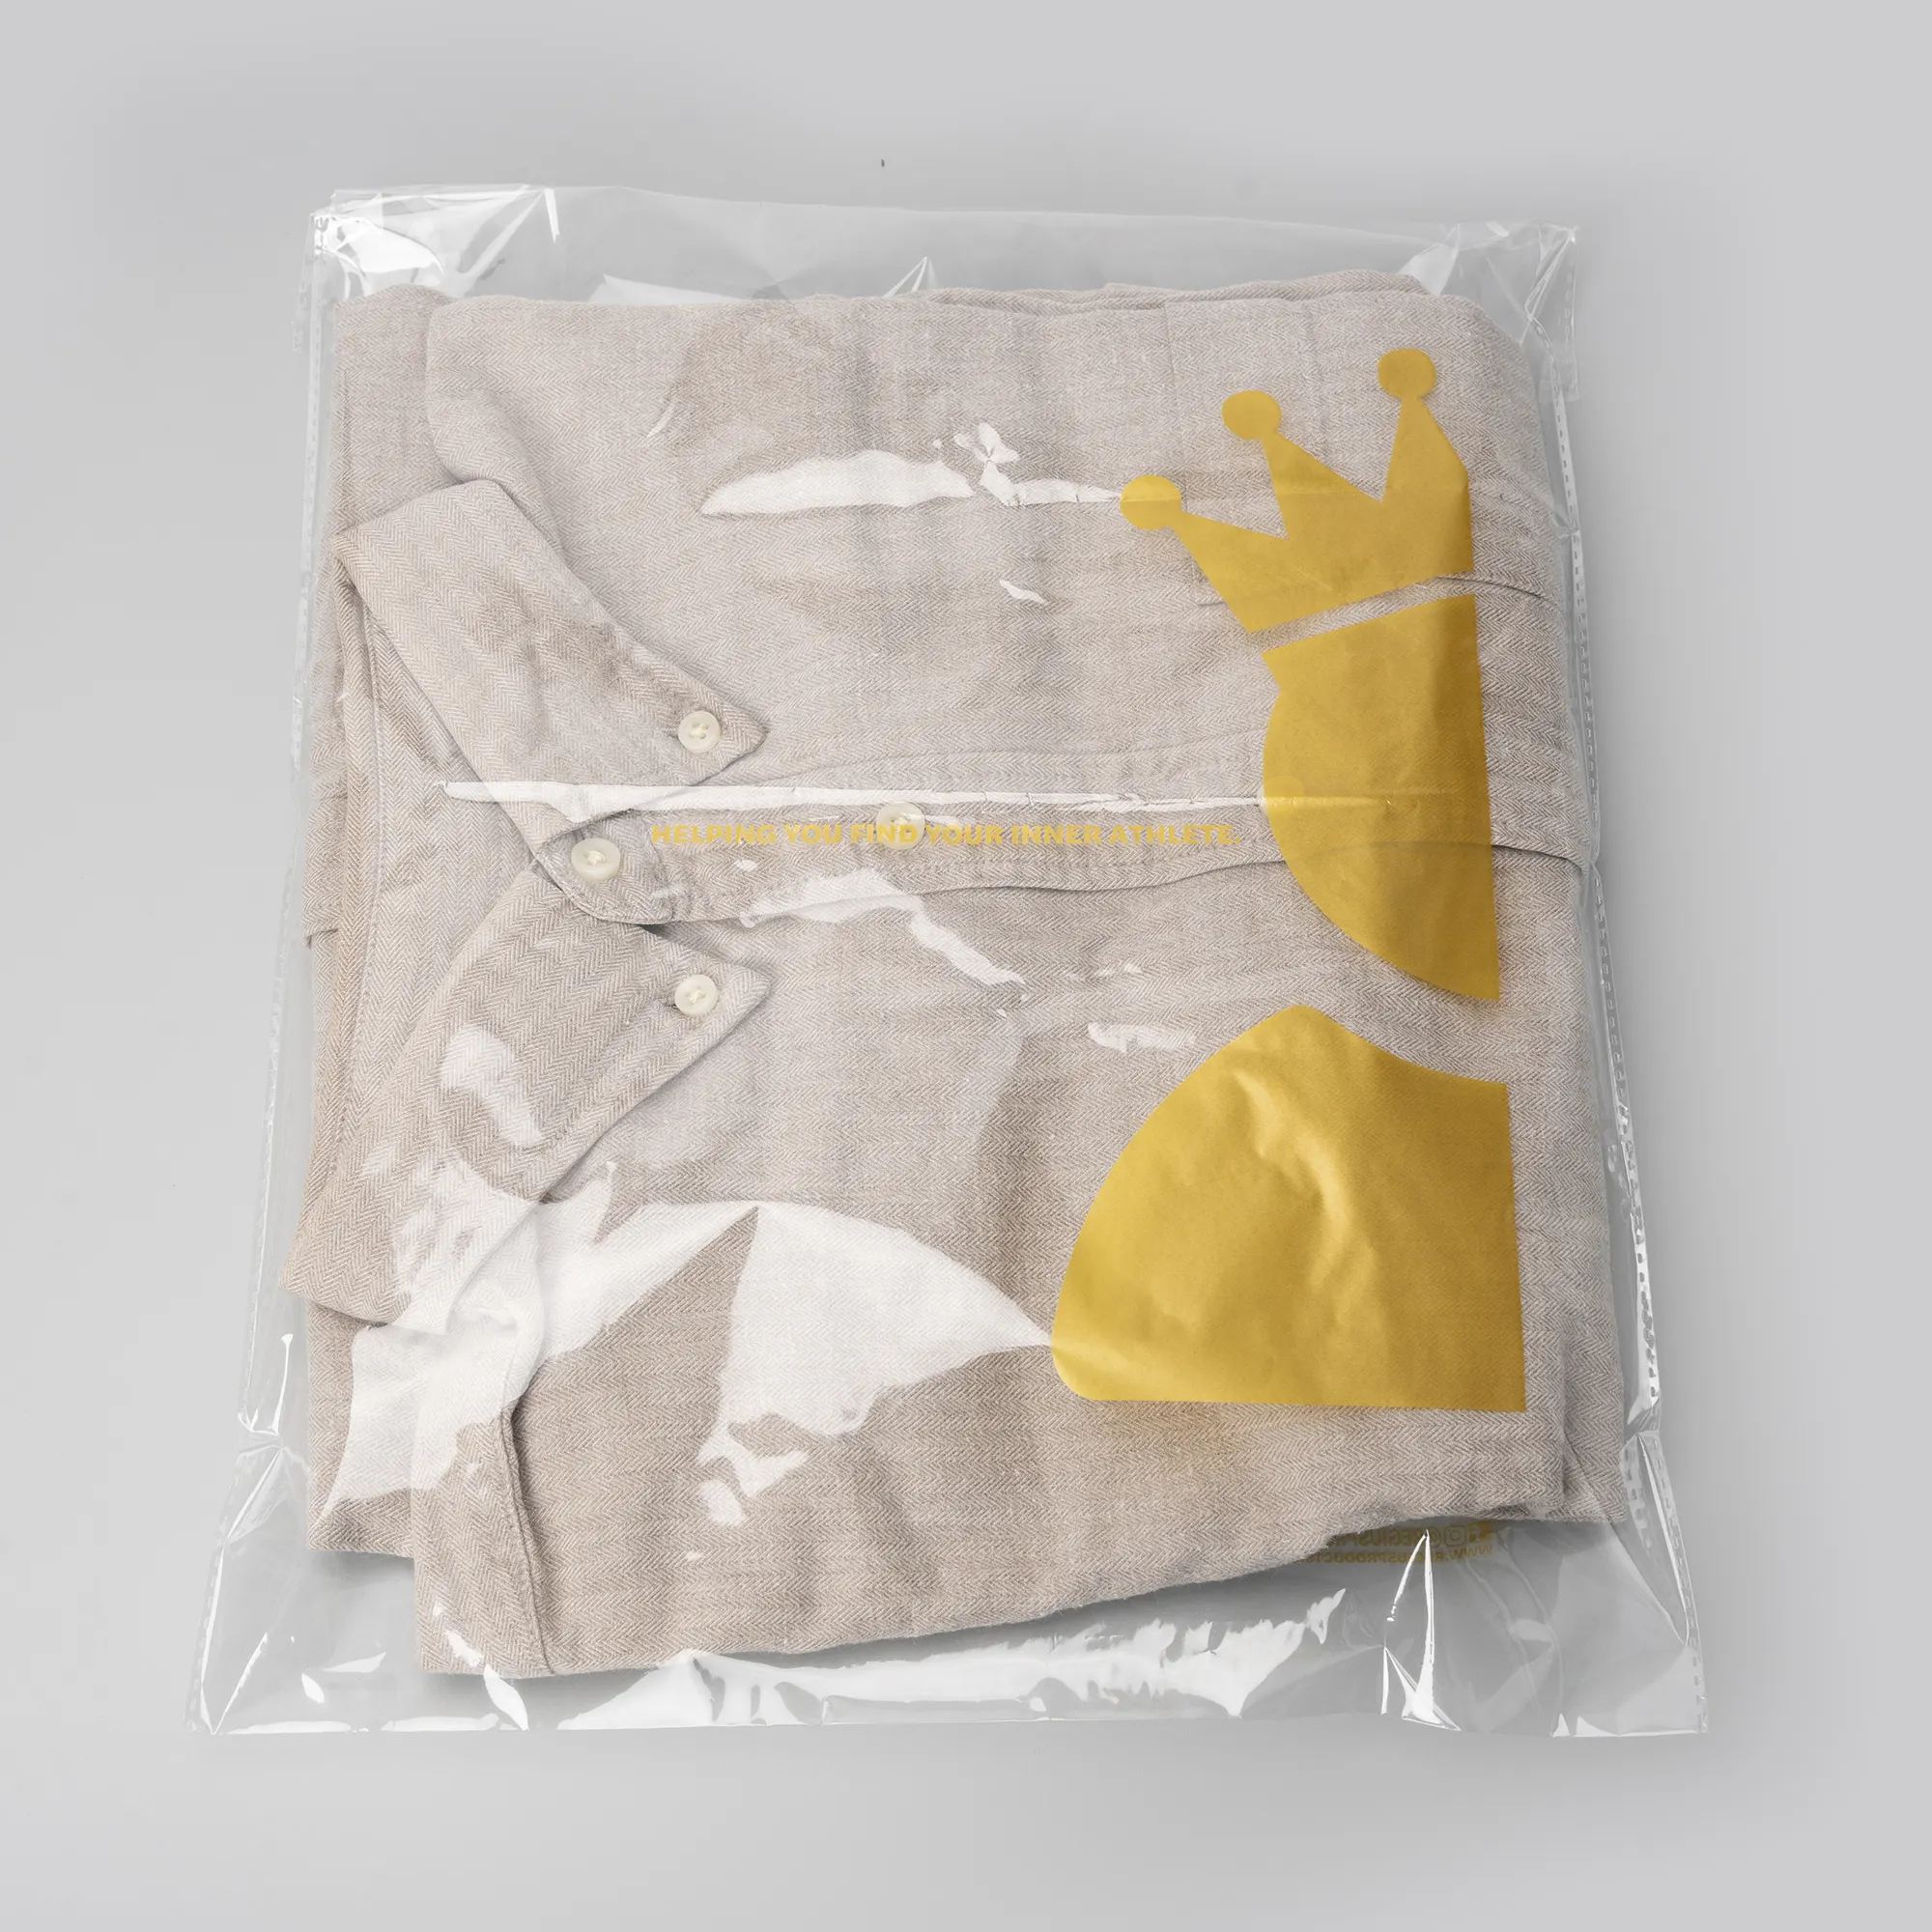 Vente directe d'usine sacs en plastique transparents, 24cm-28cm, sacs d'emballage plats OPP sacs en plastique pour jouets alimentaires